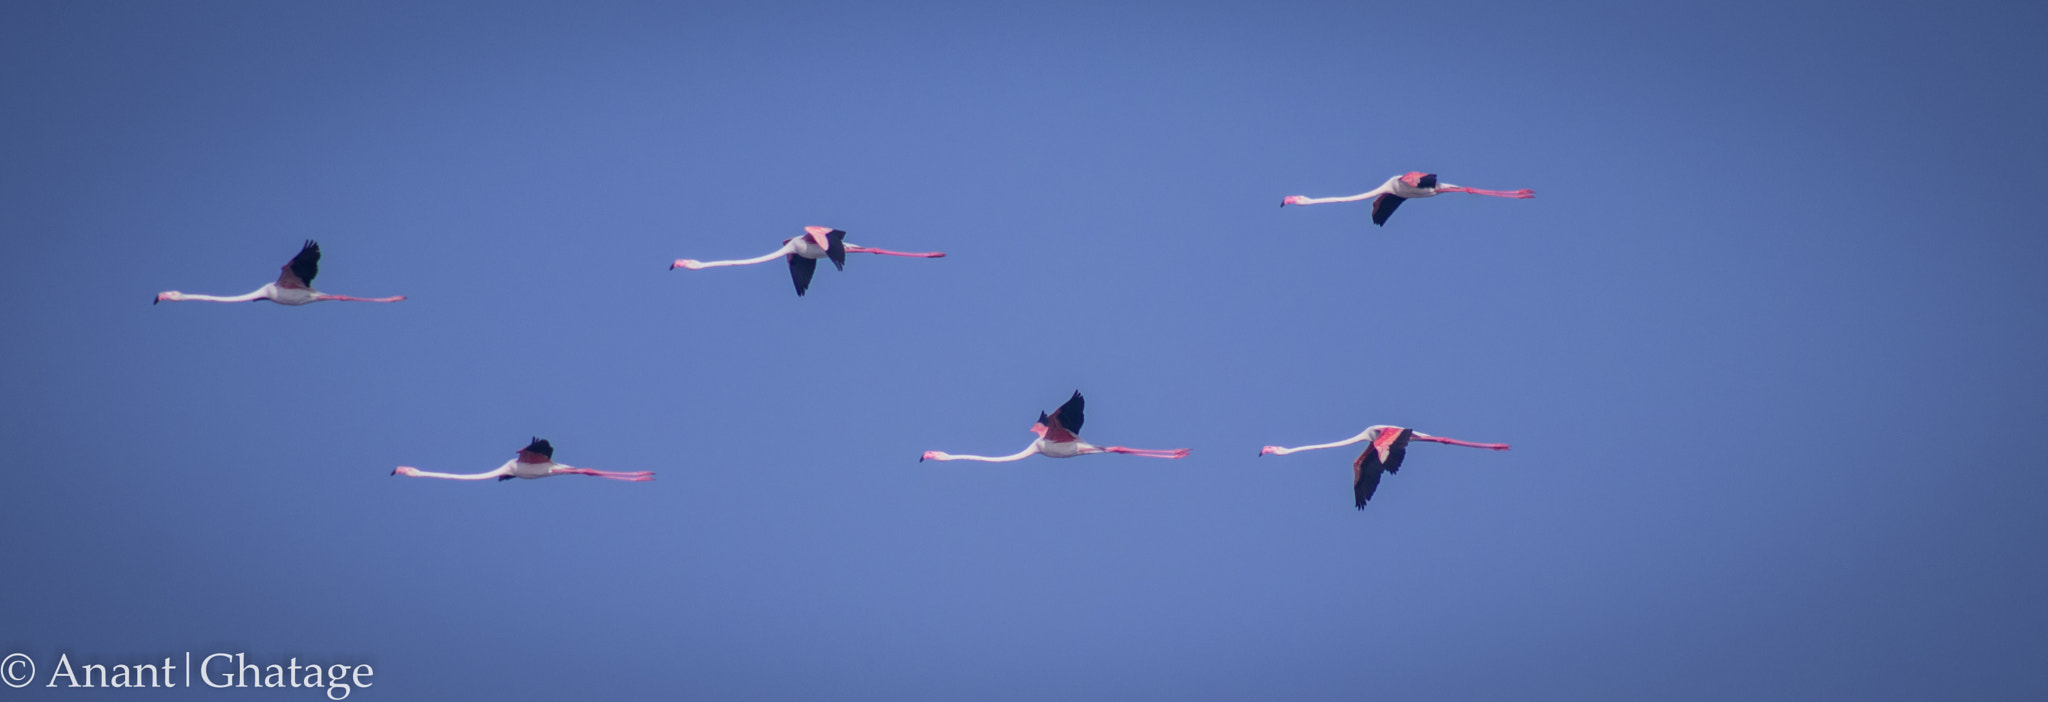 Canon EOS 80D sample photo. Flamingo air show... photography